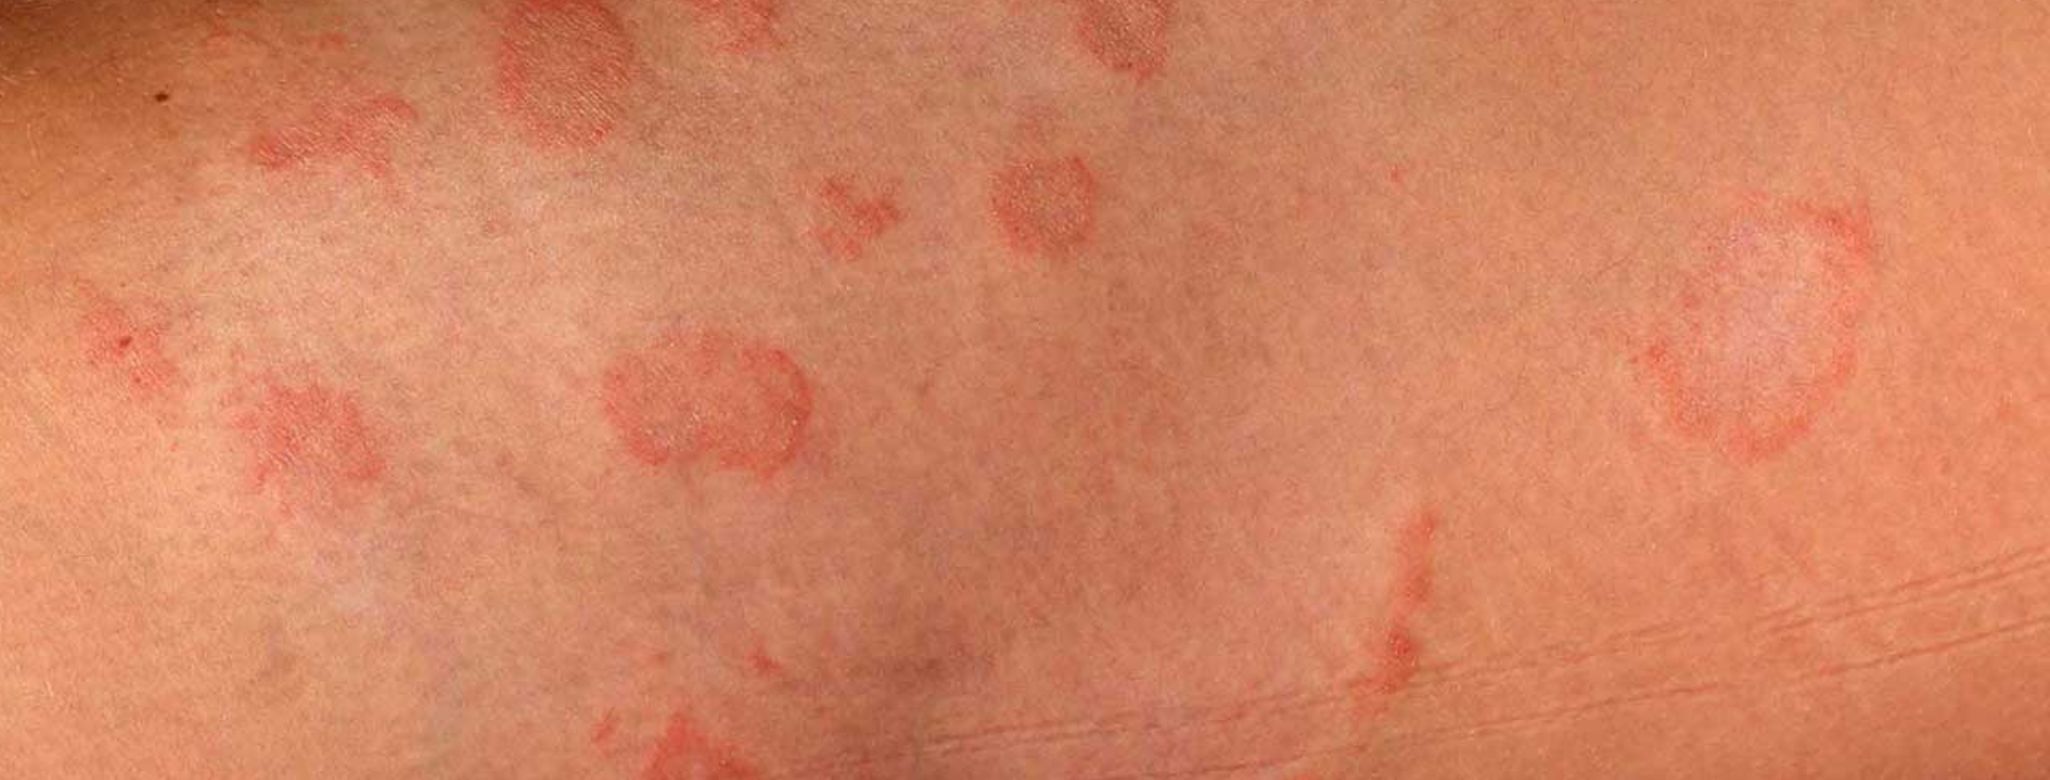 Kvasinková infekce kůže, Candida Albicans - Jak ji poznat a jak ji vyléčit?